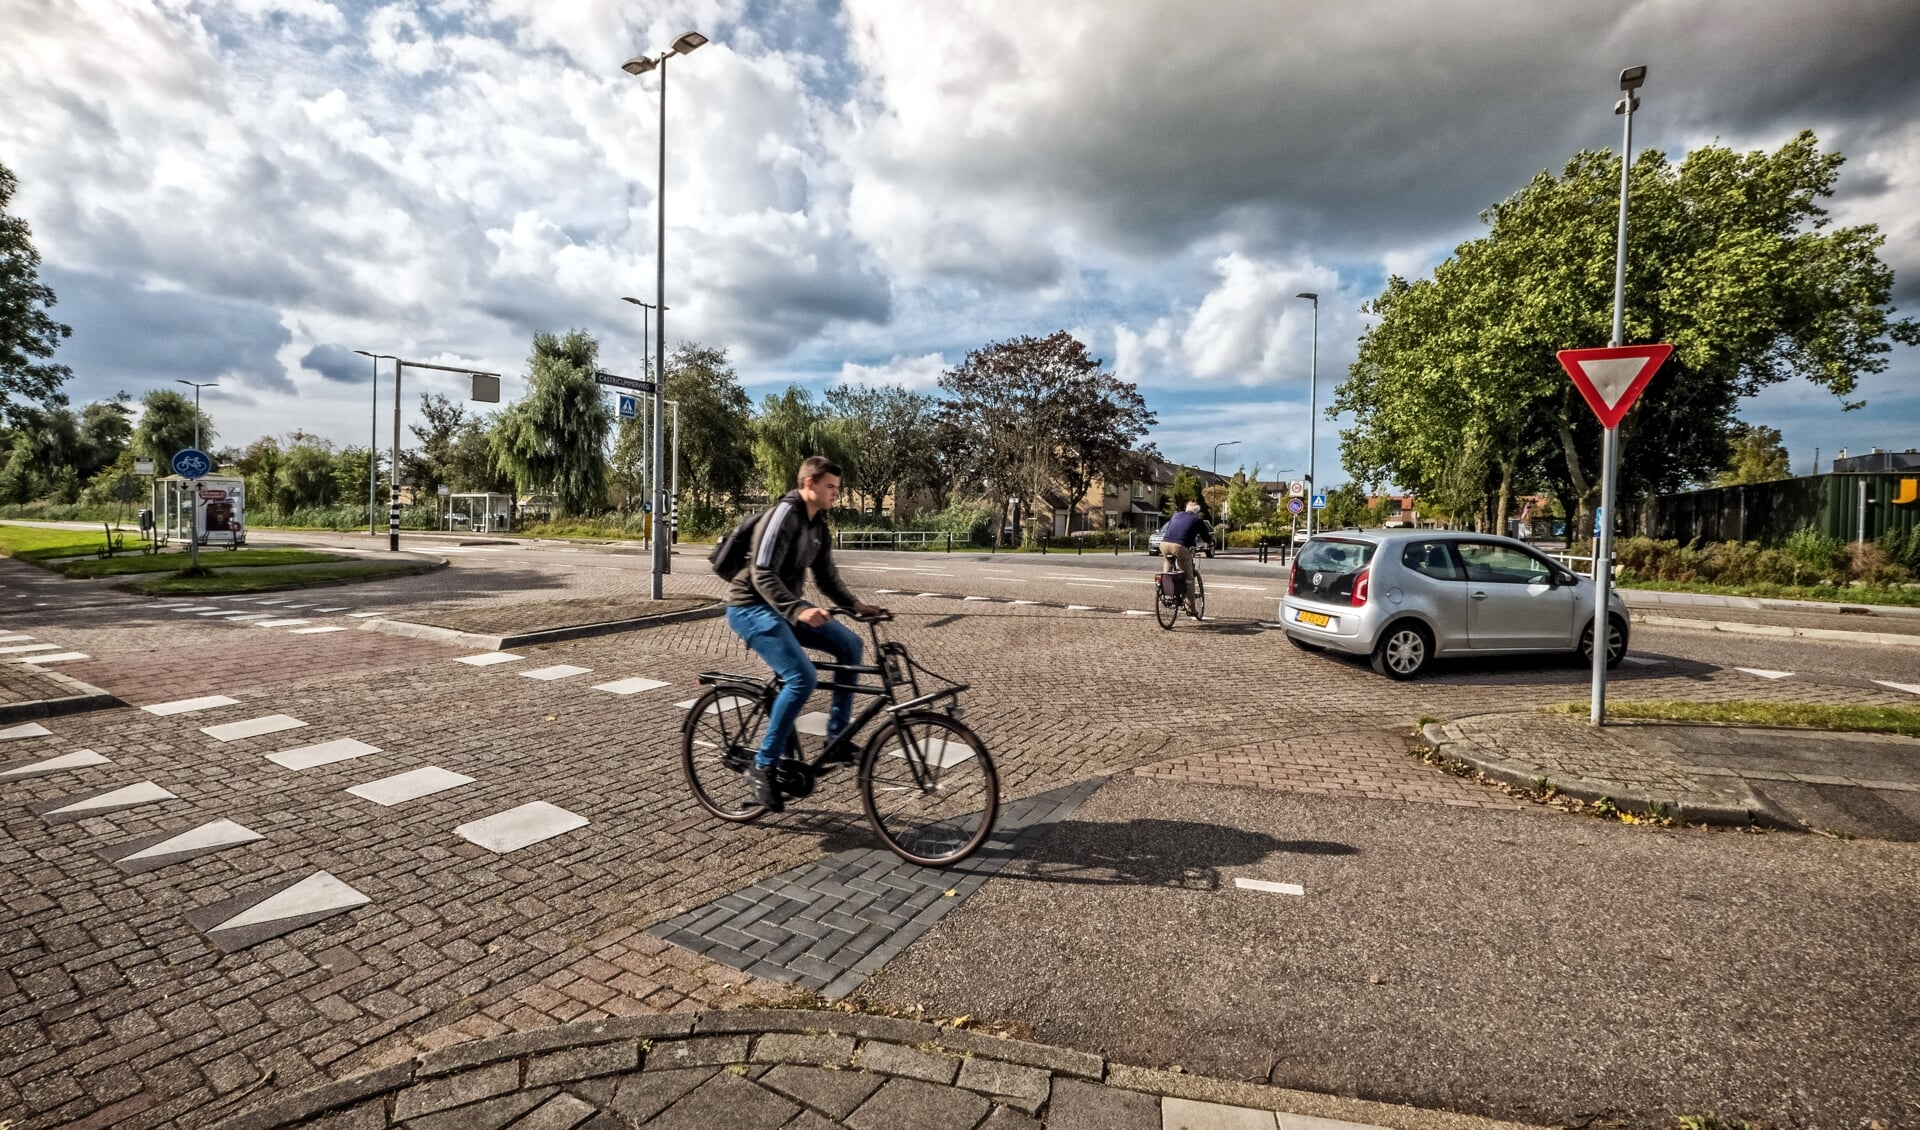 Kruising Geesterweg-Castricummerweg zorgt vaak voor chaotische toestanden. Een rotonde moet meer veiligheid bieden. 